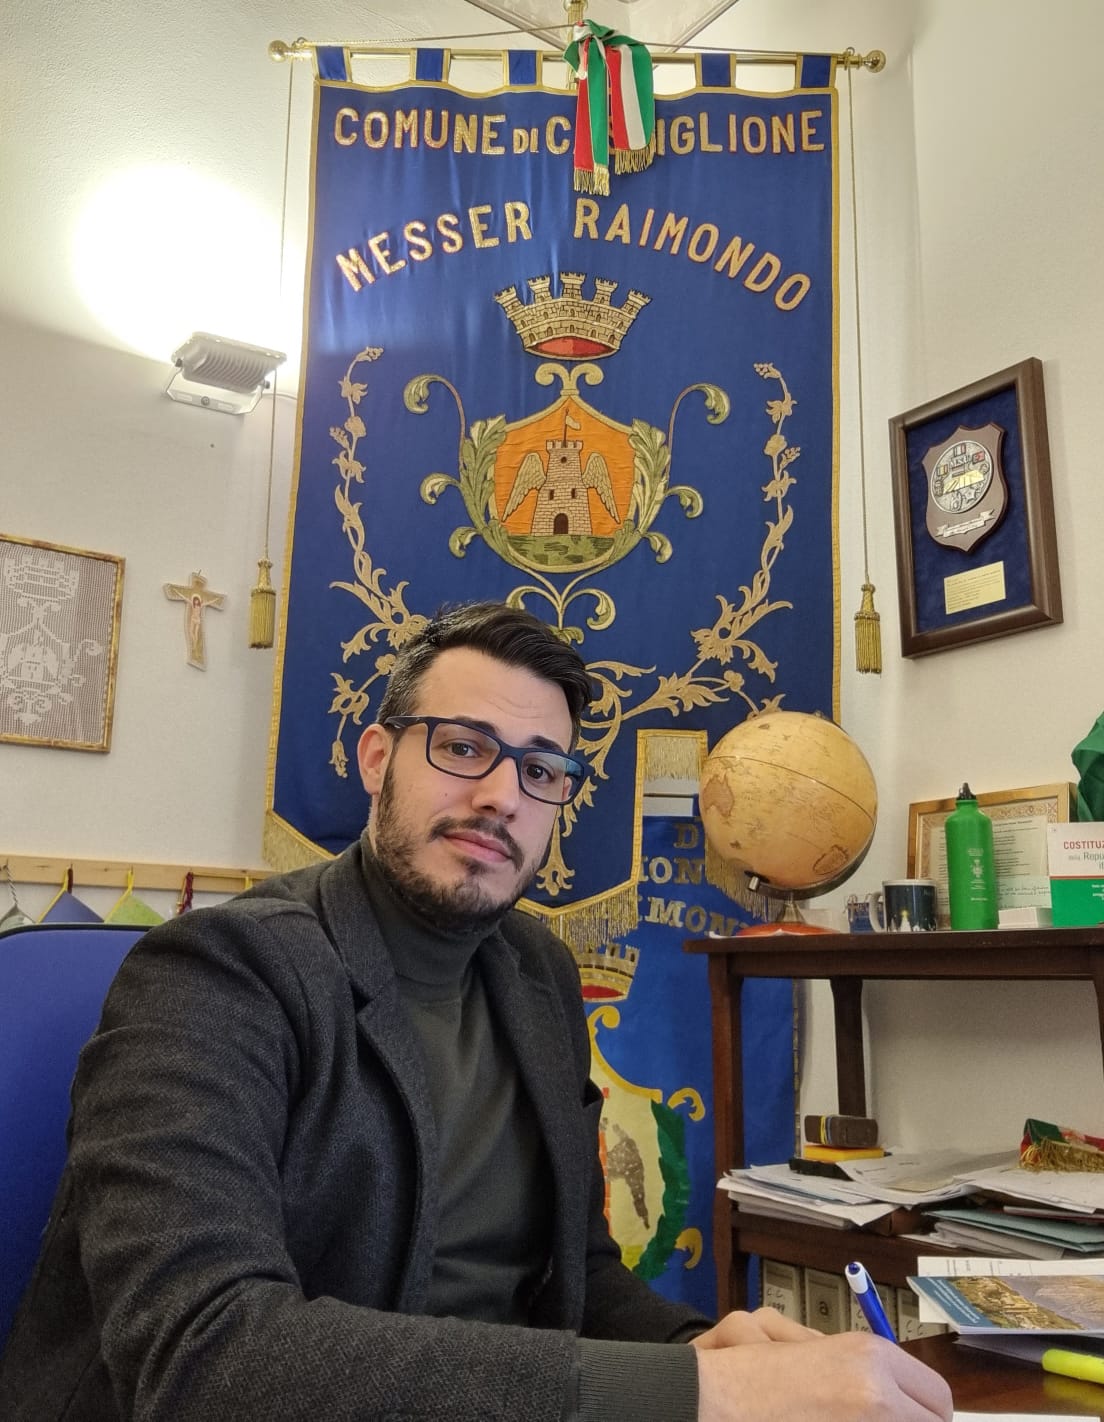 Direzione Treviso, D’Ercole (Castiglione Messer Raimondo): “Creare un Paese ecosostenibile”